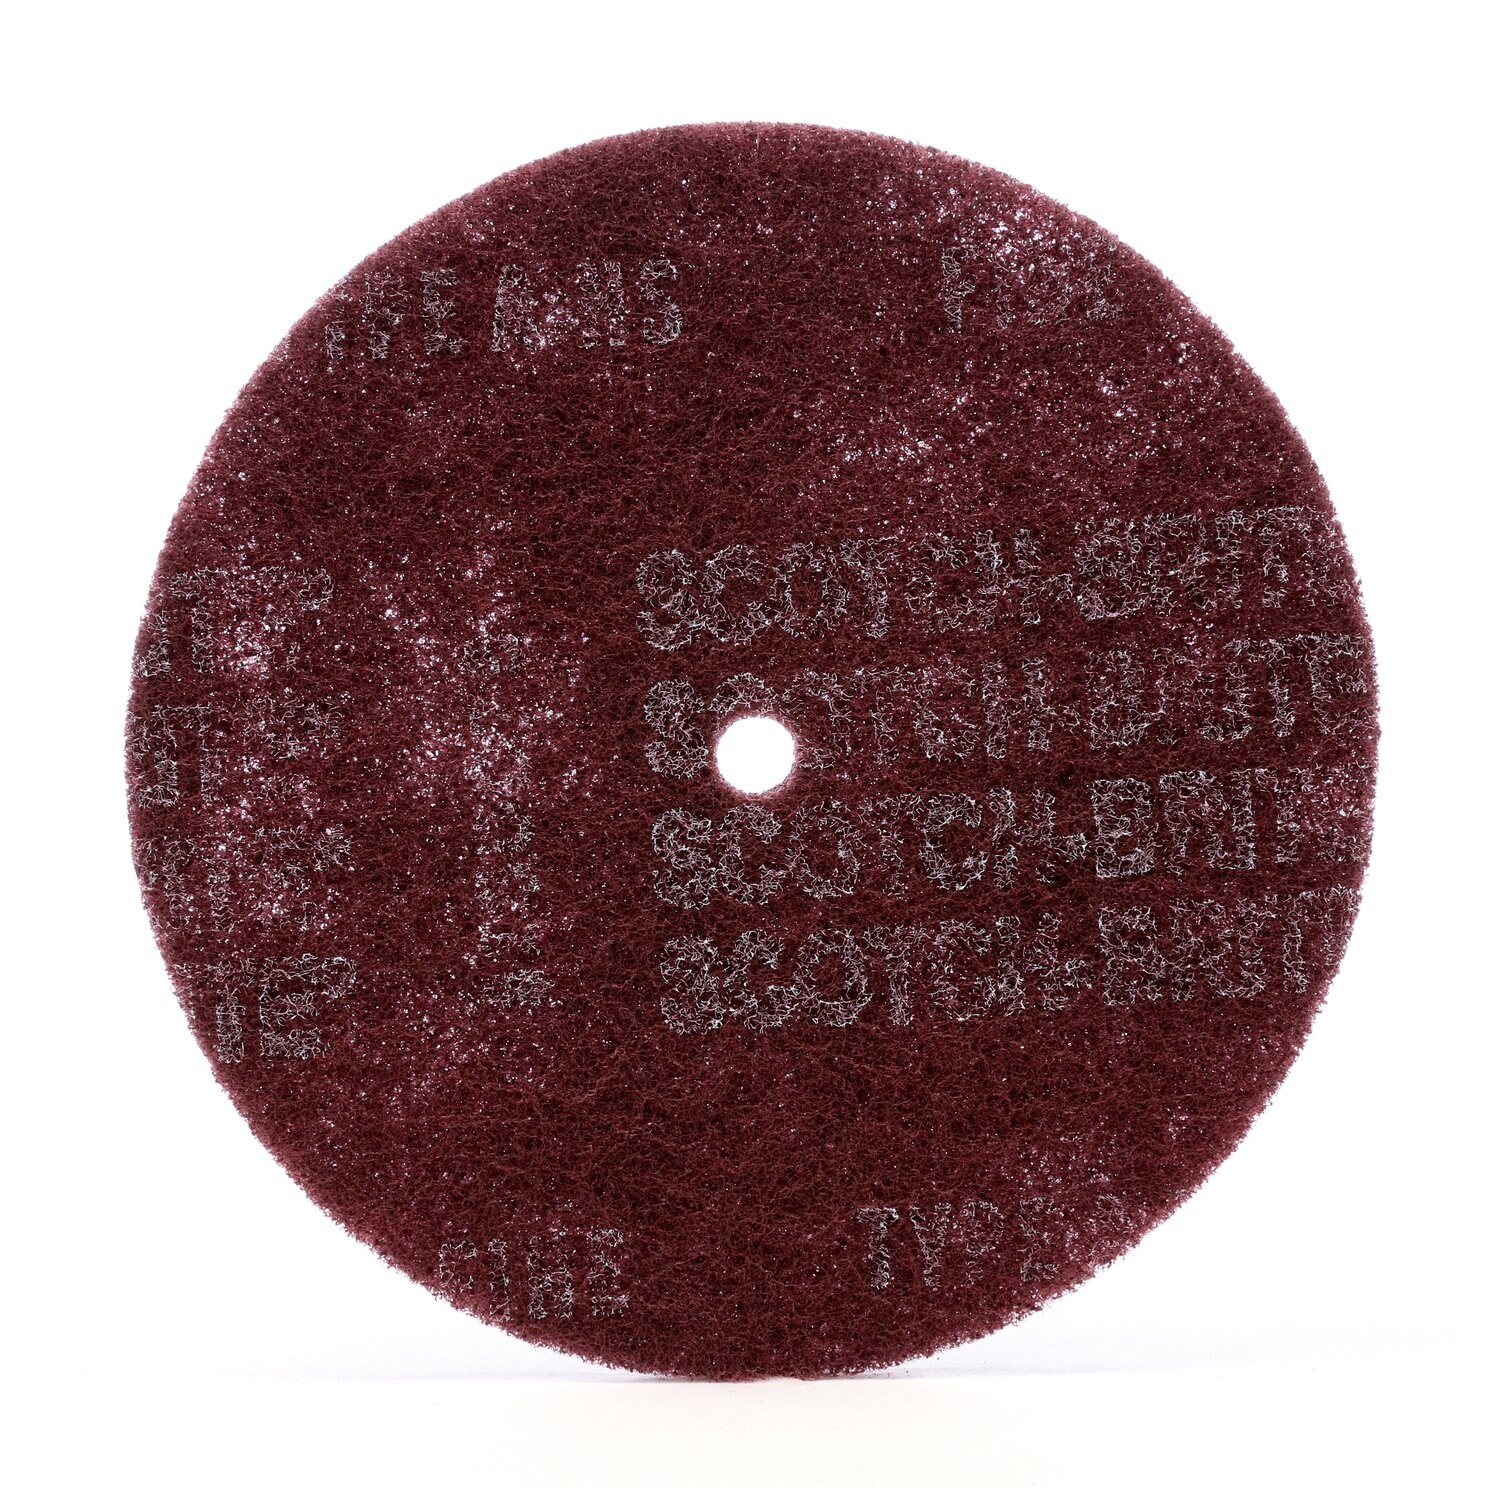 7010365631 - Scotch-Brite High Strength Disc, HS-DC, A/O Very Fine, 10 in x 1 in, 50
ea/Case